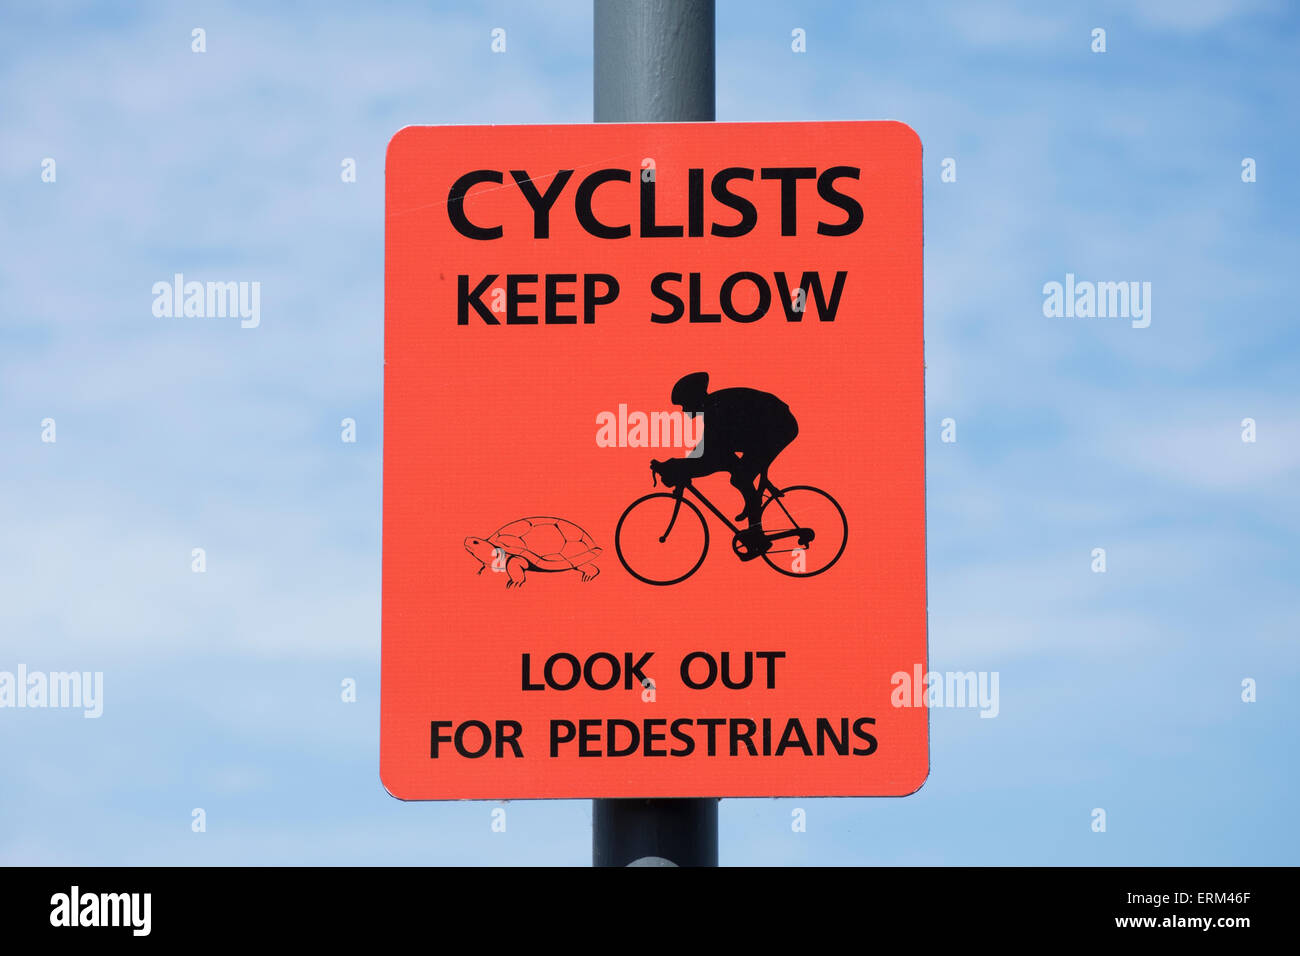 Garder les cyclistes lents avec les piétons, signe représenté comme une tortue, à parvenir à Battersea, Londres, Angleterre Banque D'Images